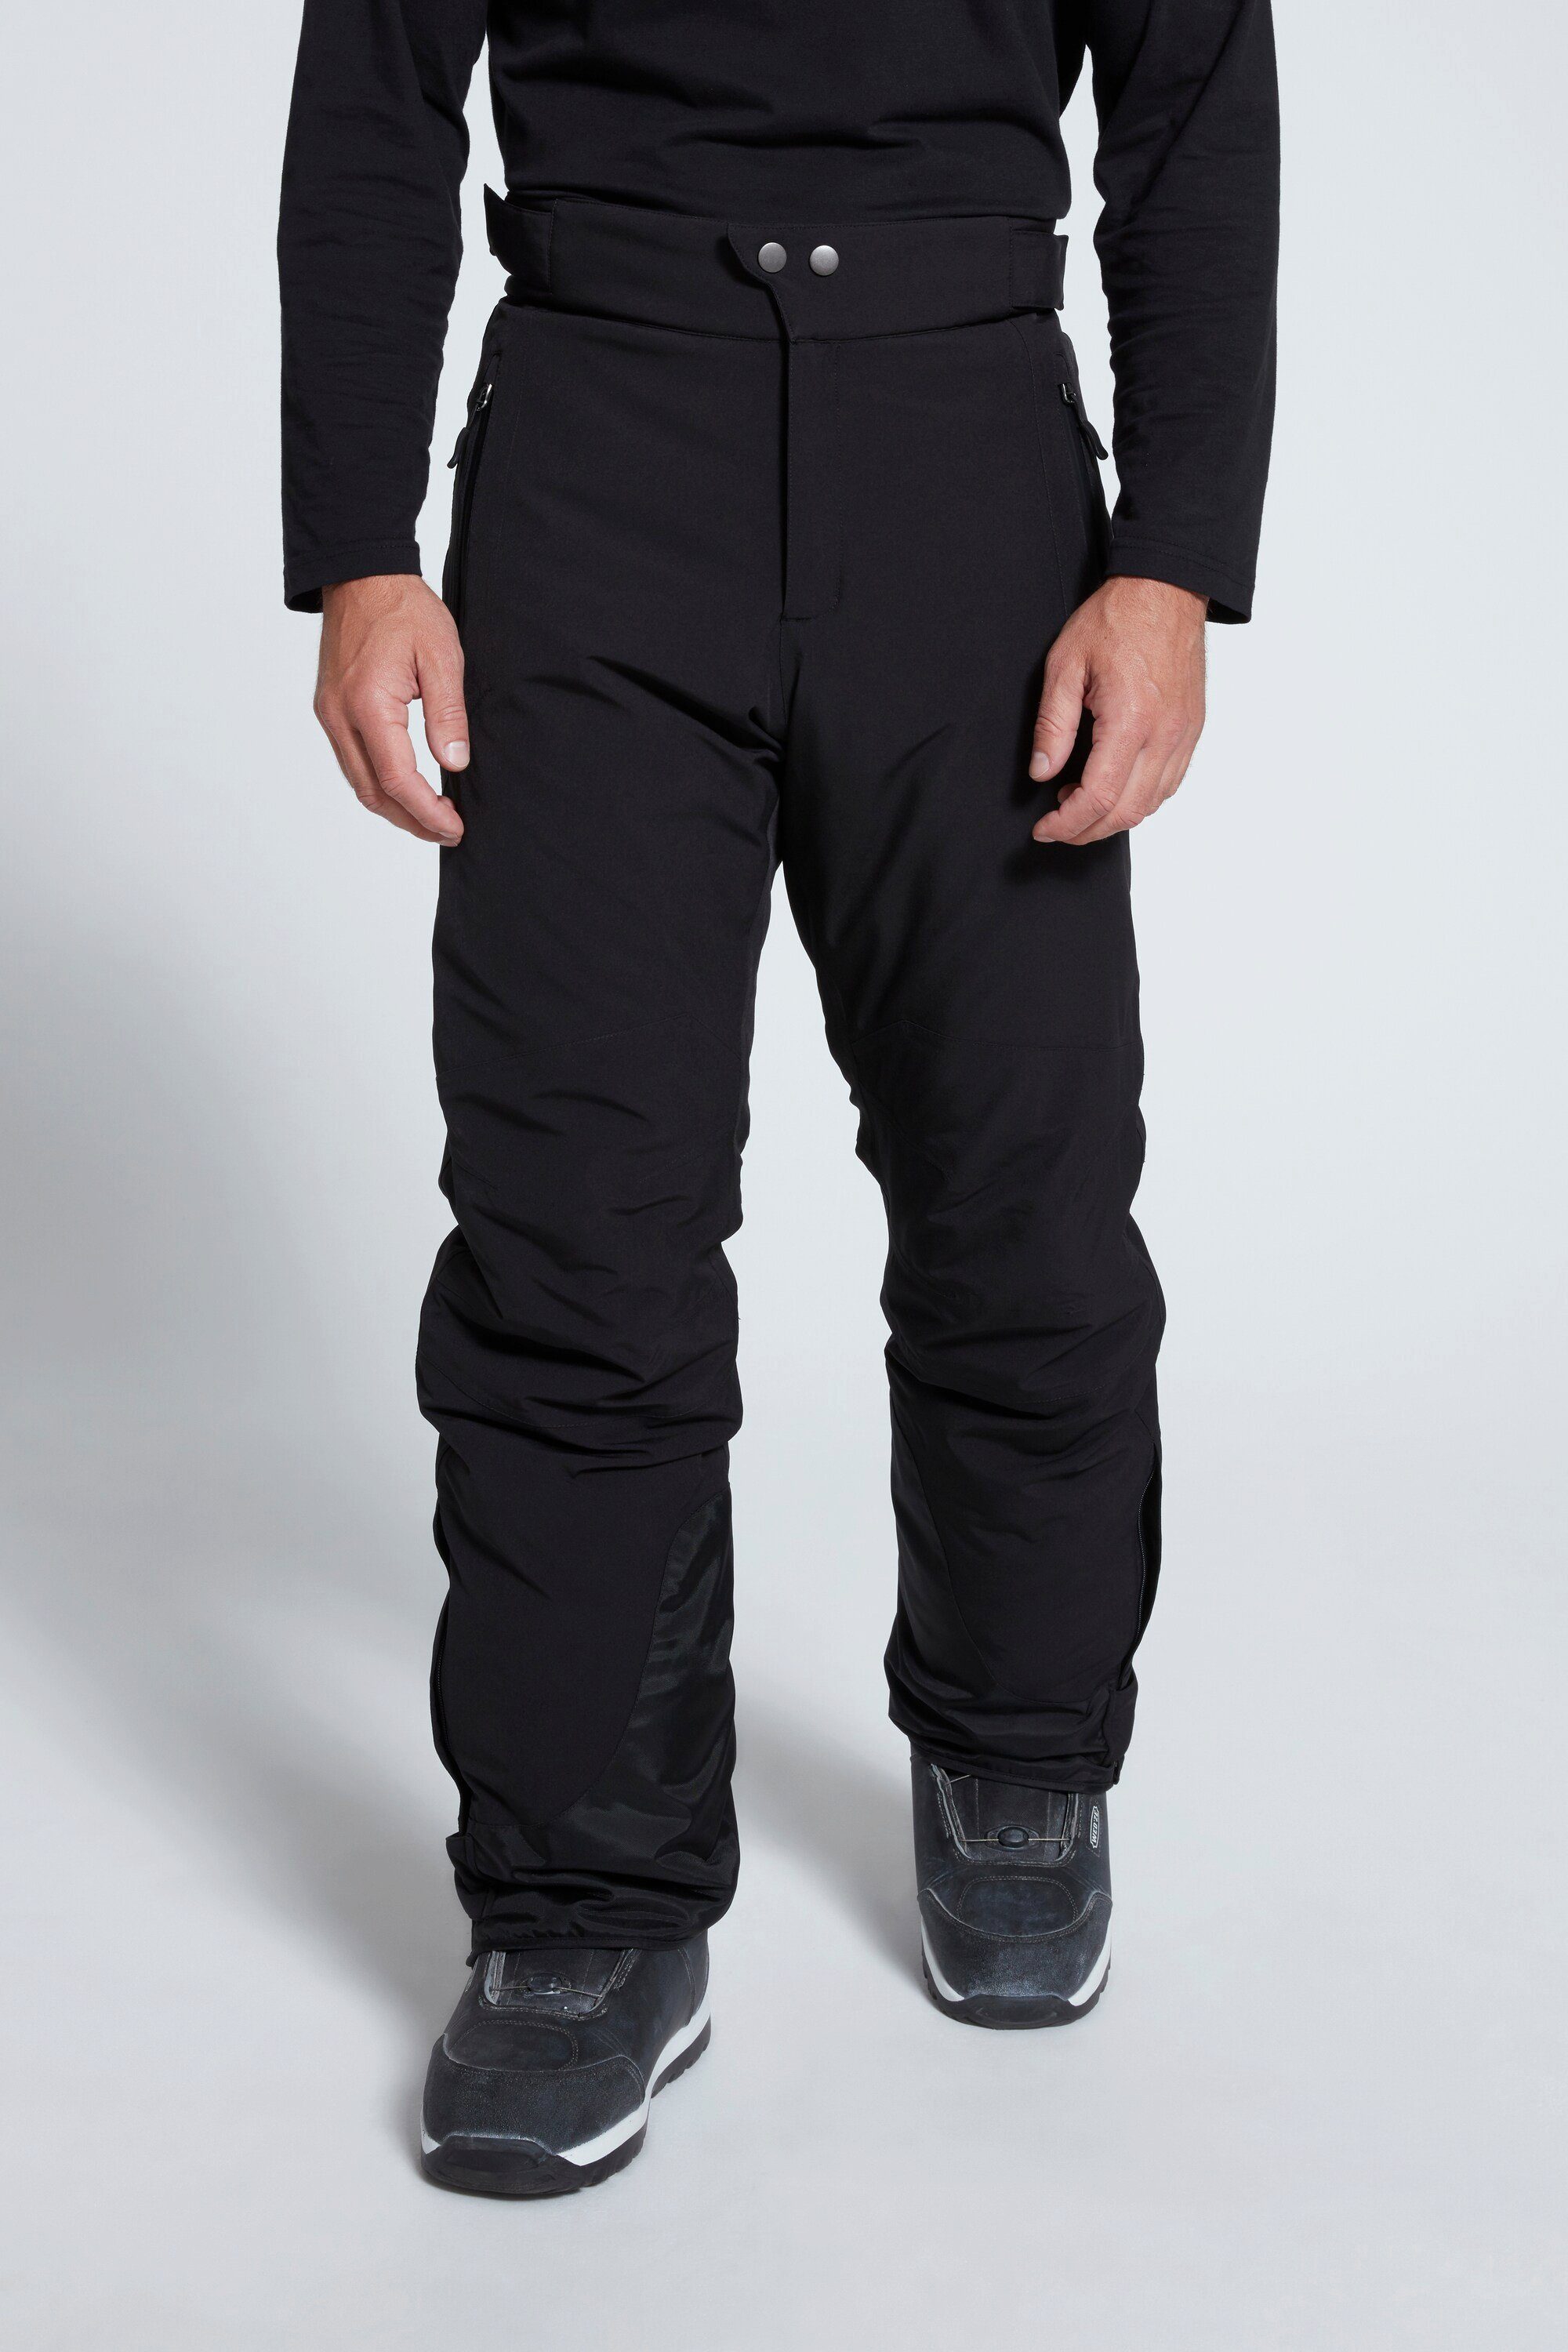 JP1880 Skihose Skihose Skiwear Bauchfit Funktions-Qualität schwarz